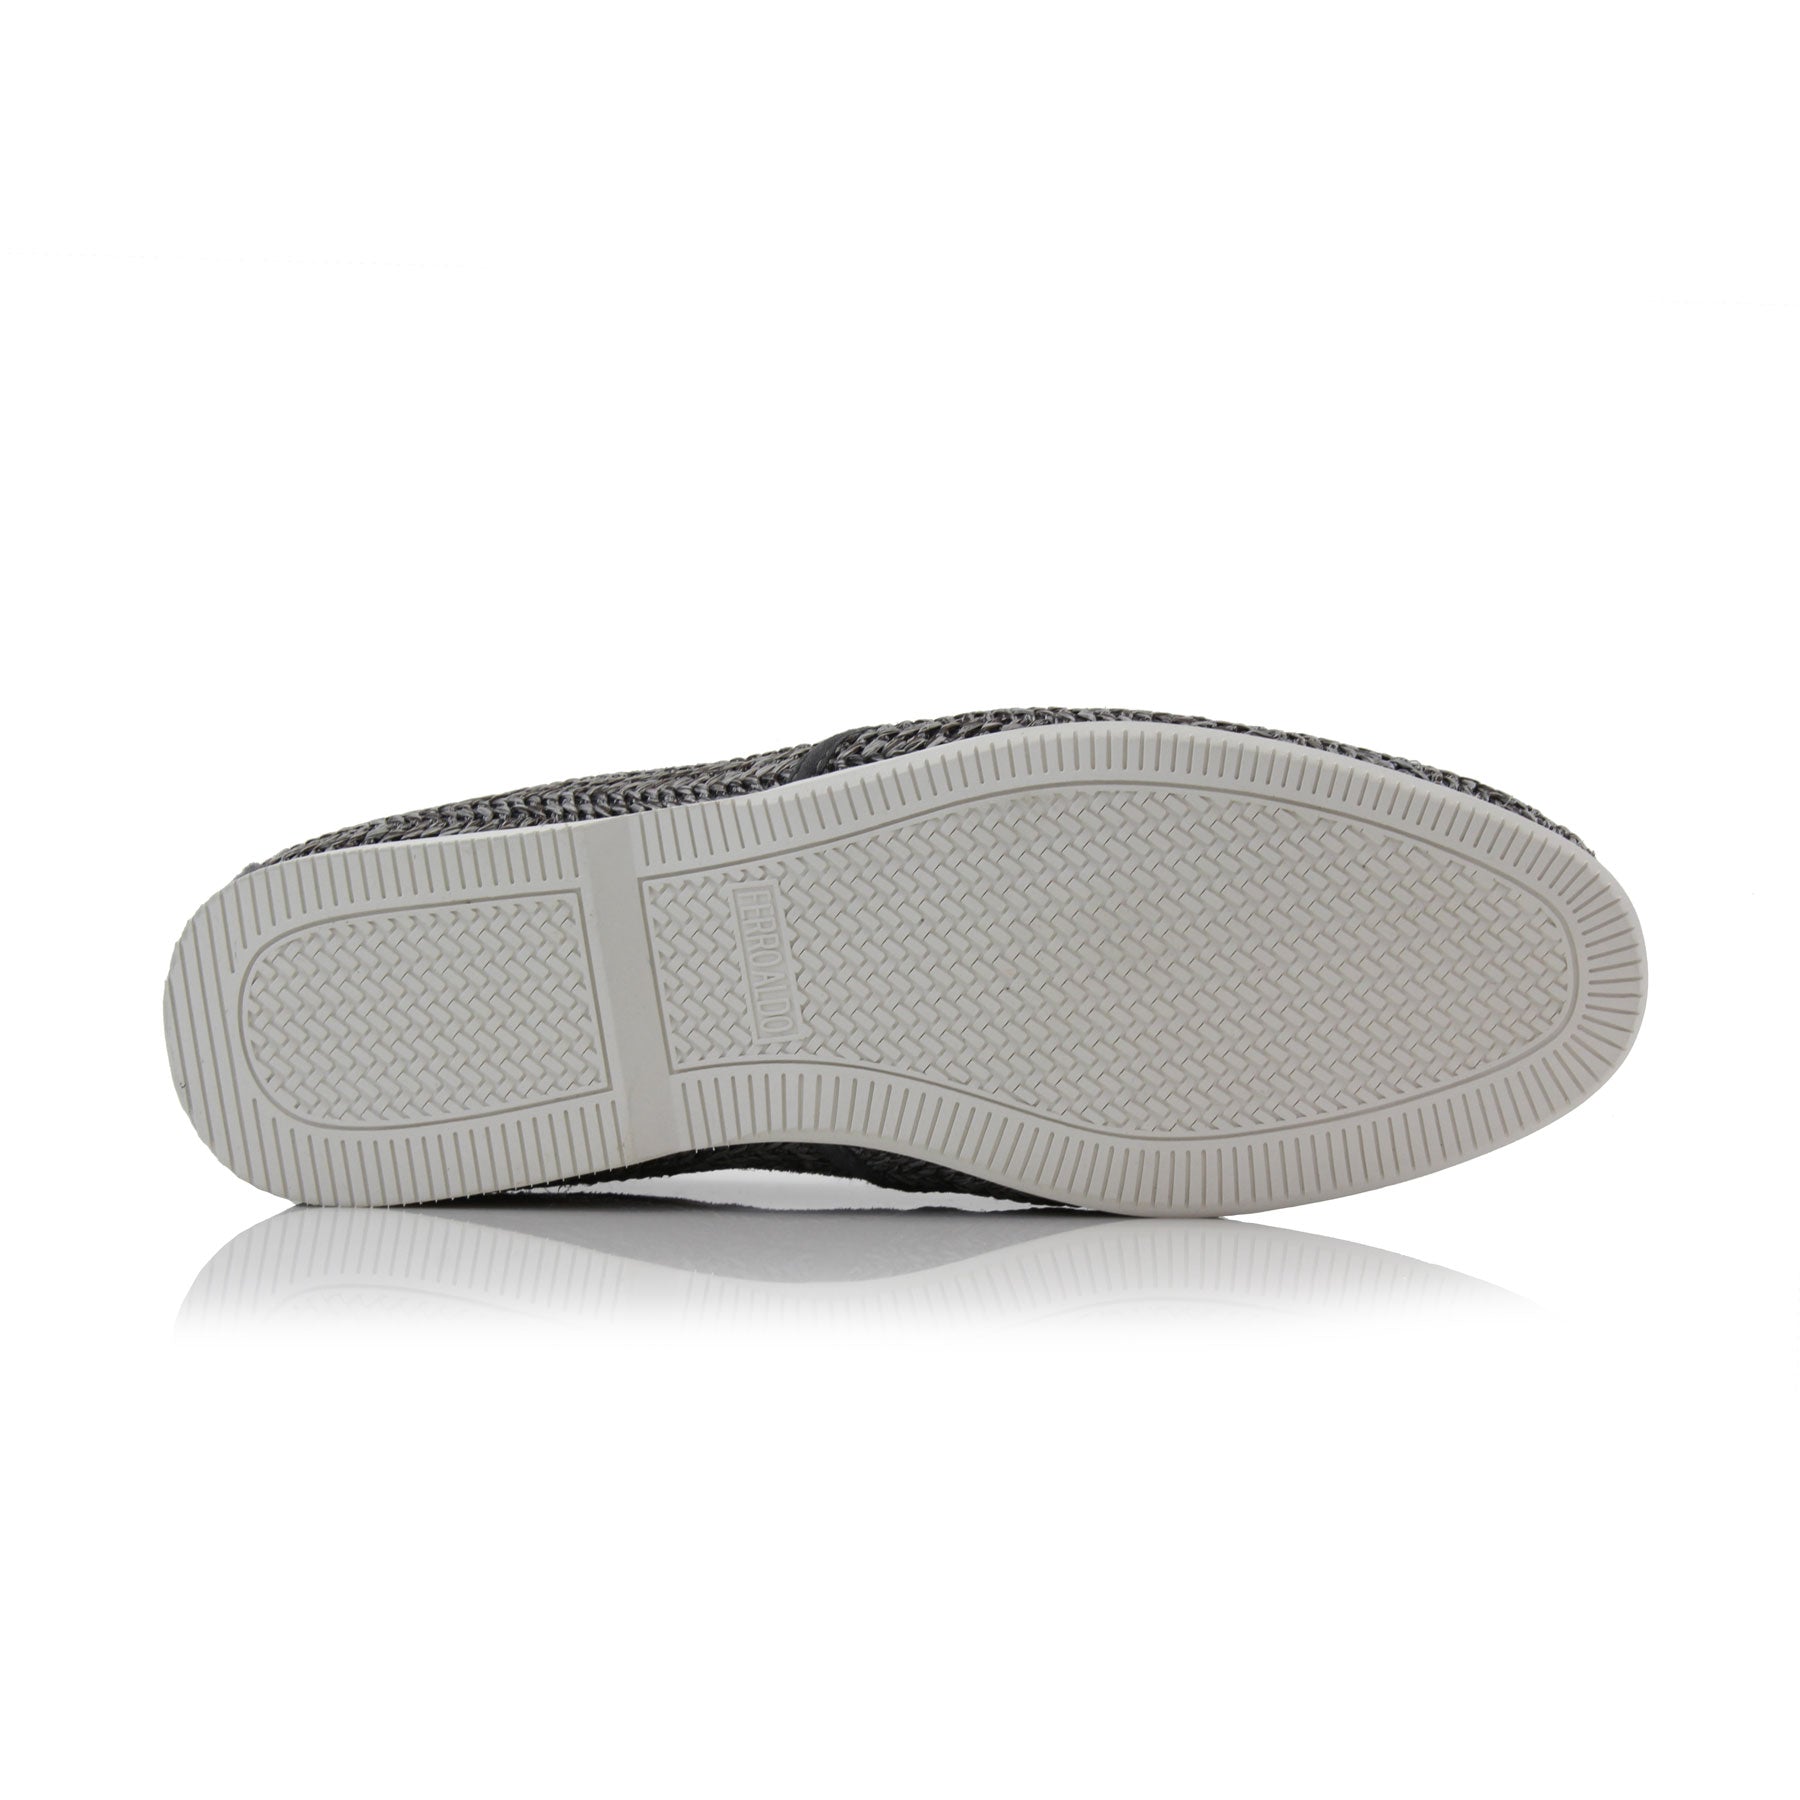 Woven Loafers | Jiro by Ferro Aldo | Conal Footwear | Bottom Sole Angle View